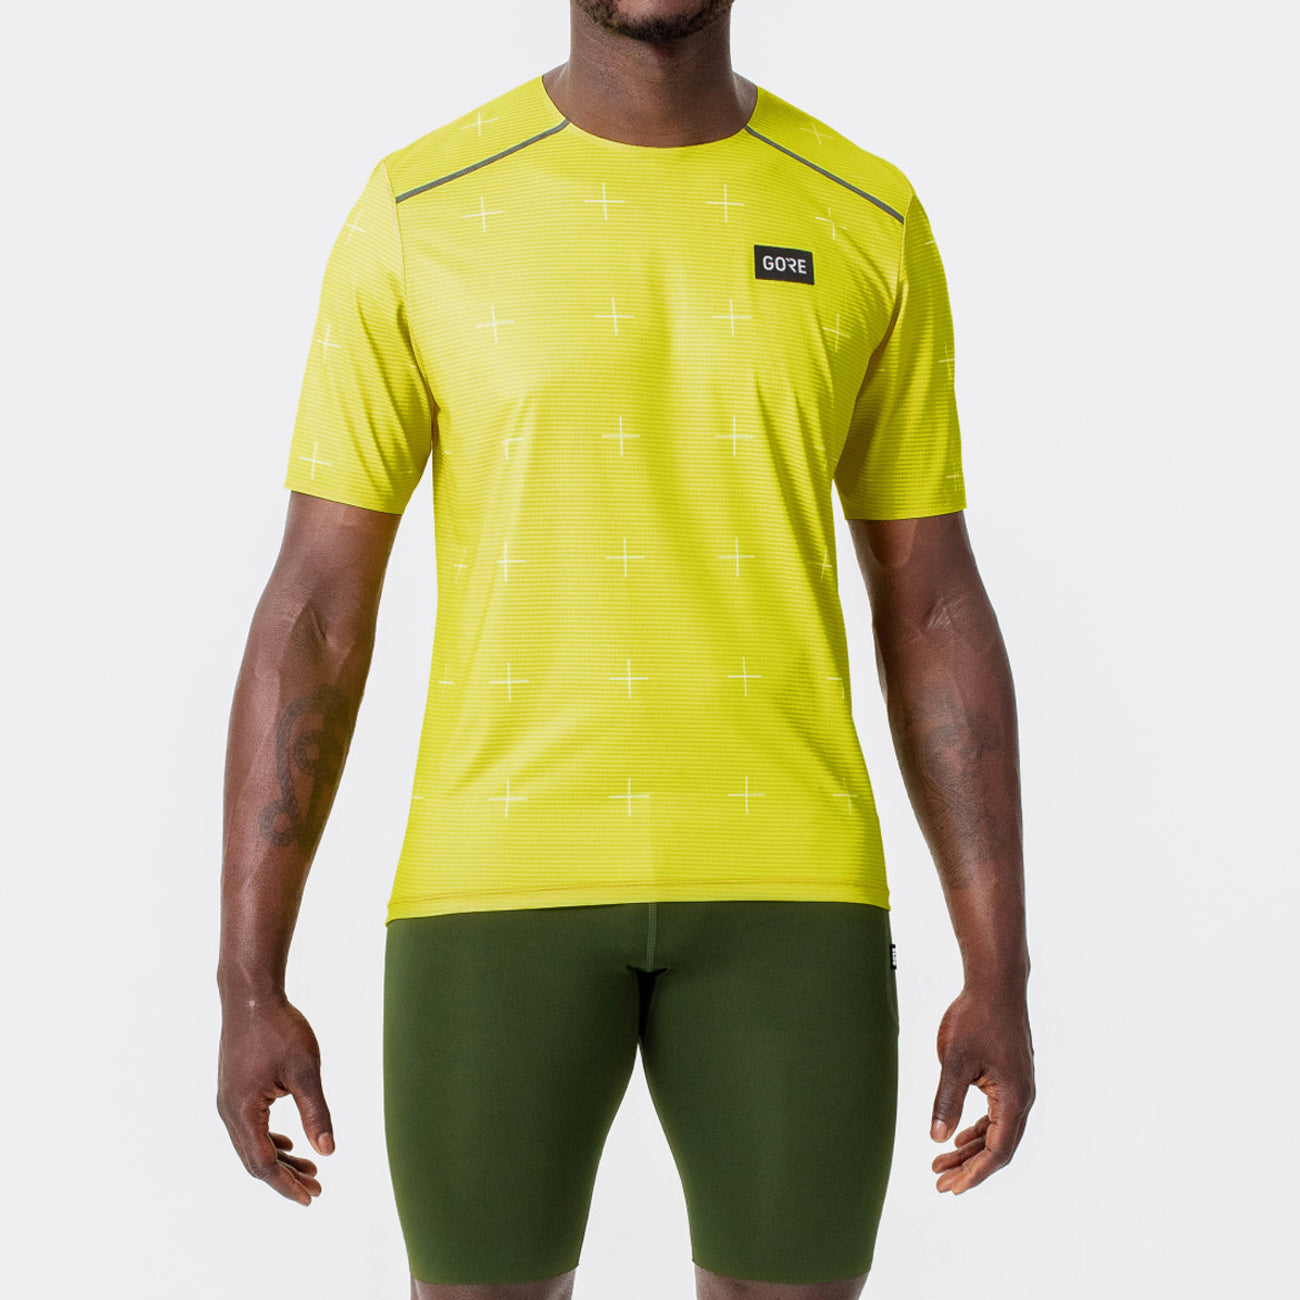 Gore Wear Contest Daily Shirt Herren Wasched Neon Yellow